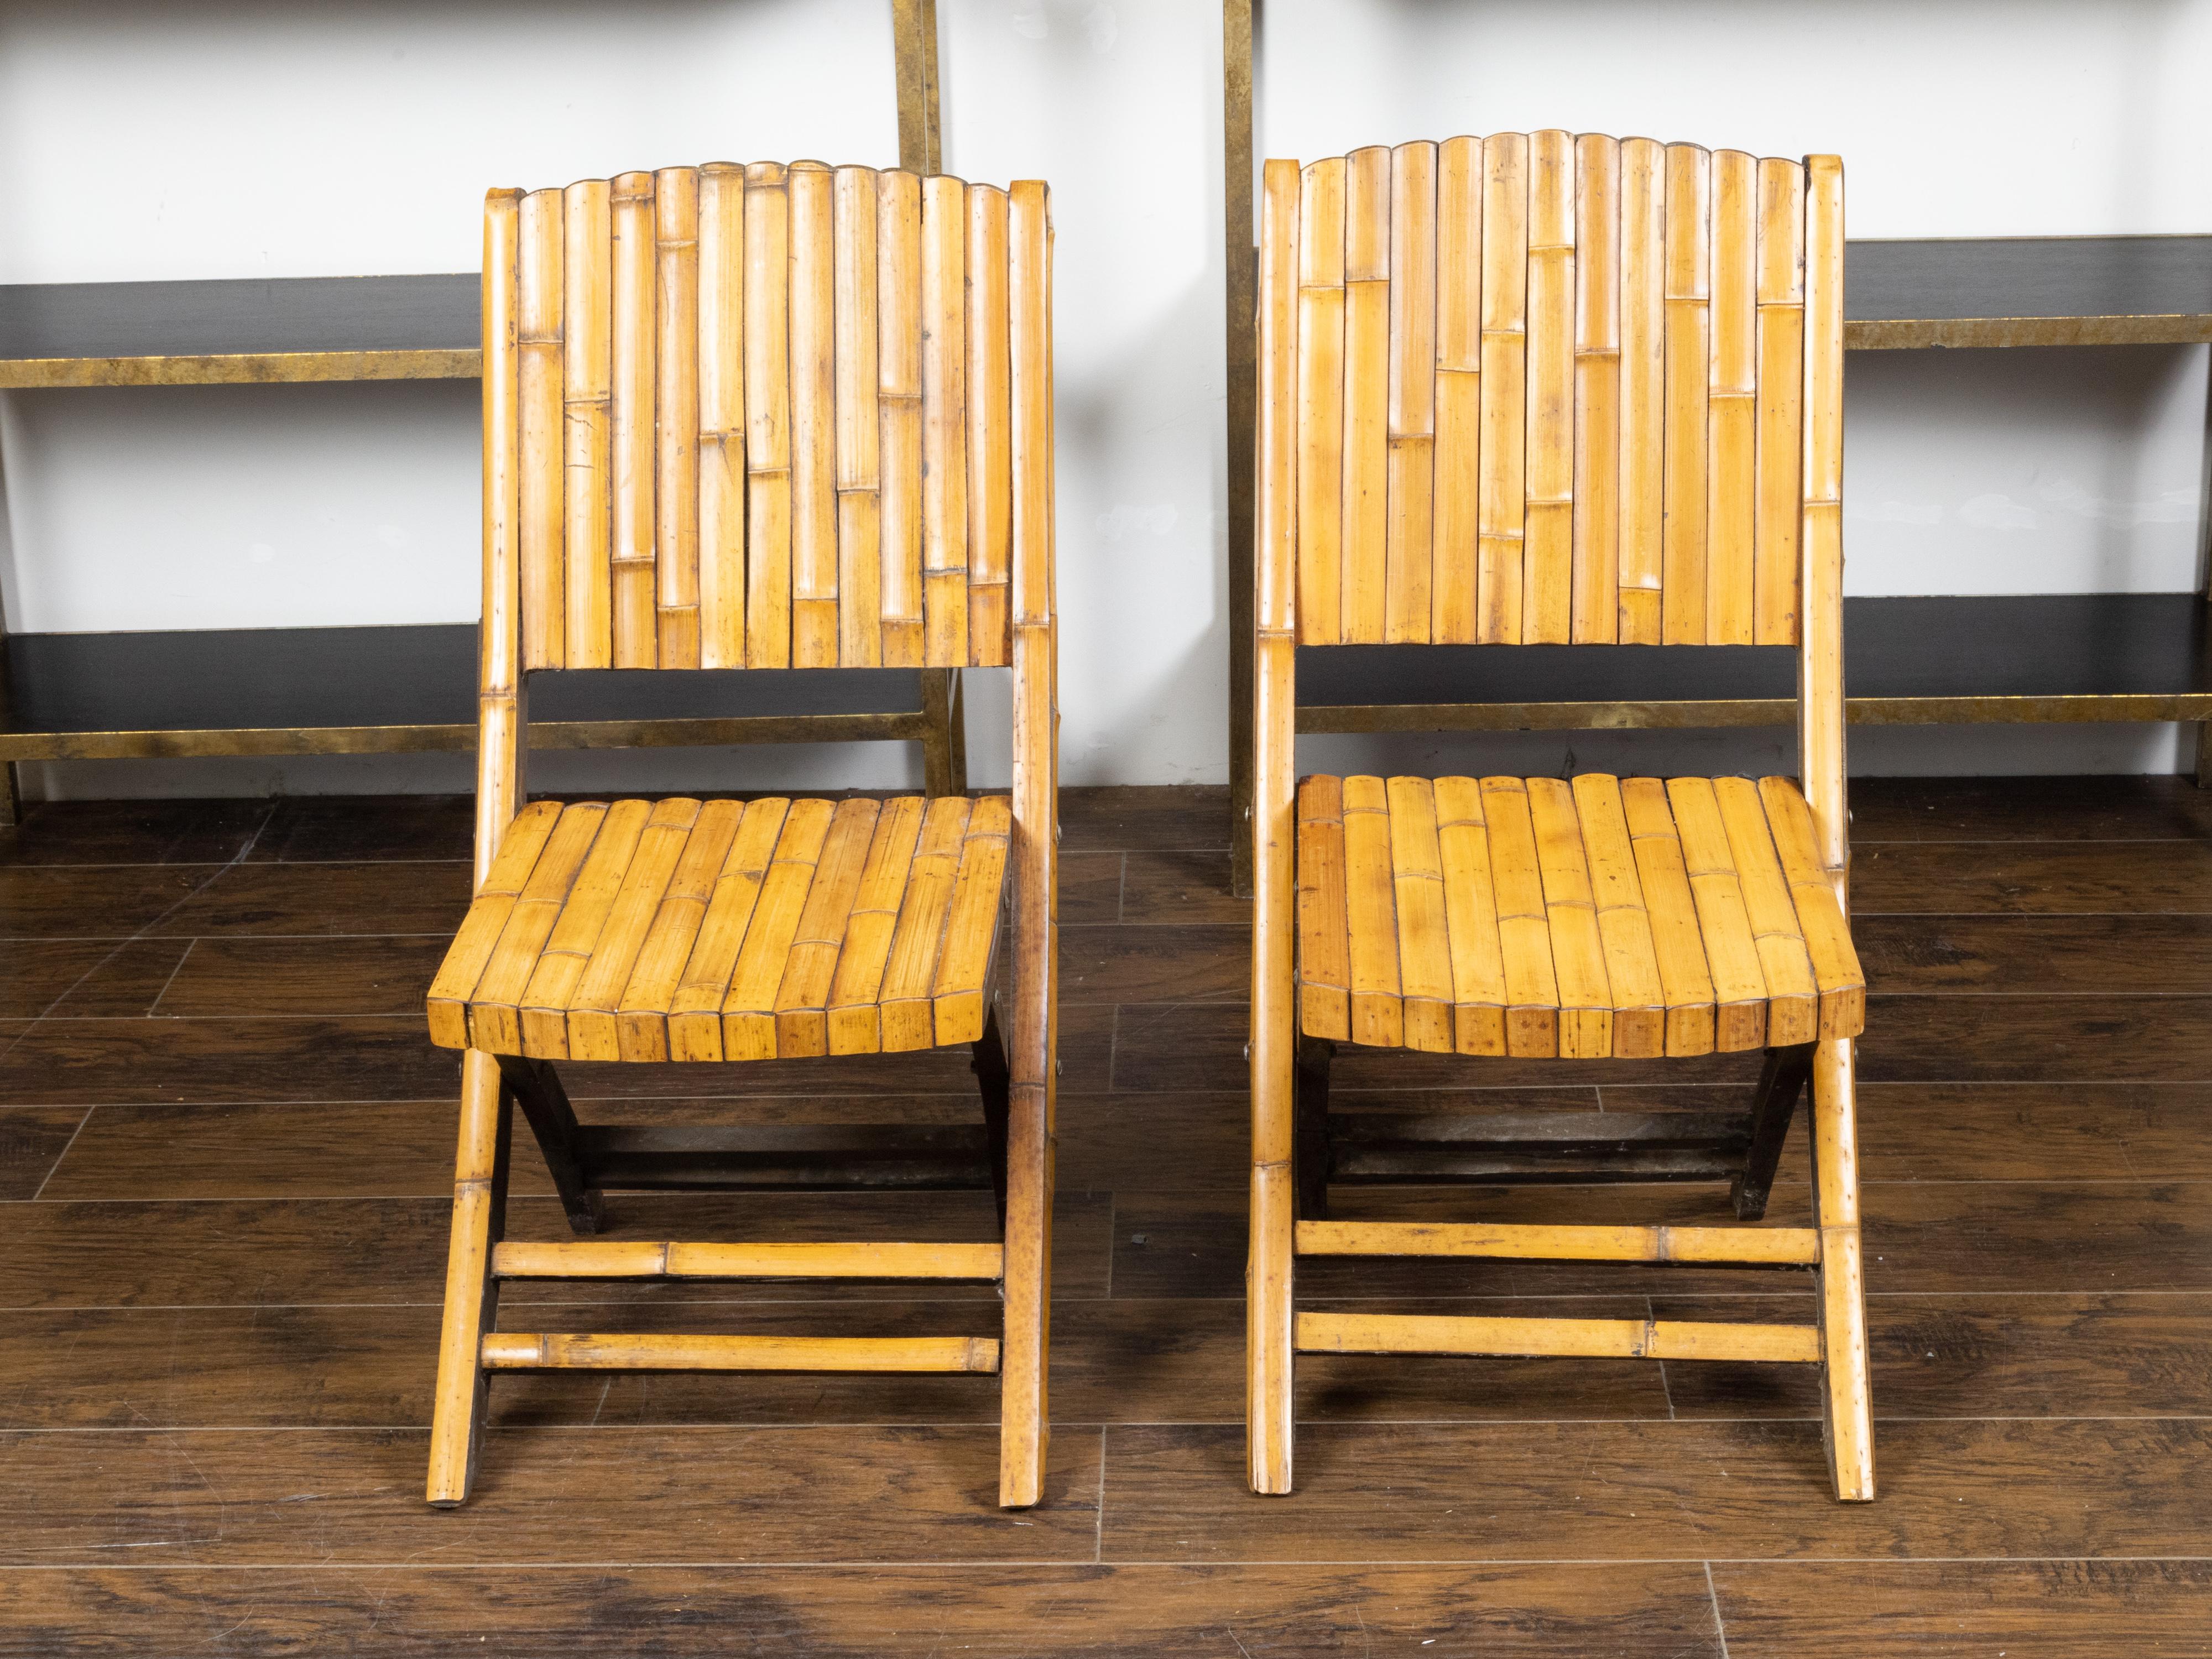 Une paire de chaises pliantes en bambou du milieu du 20ème siècle, avec une patine brun clair. Créée pendant la période du milieu du siècle, cette paire de chaises pliantes présente une structure en bambou à lattes parfaitement complétée par une